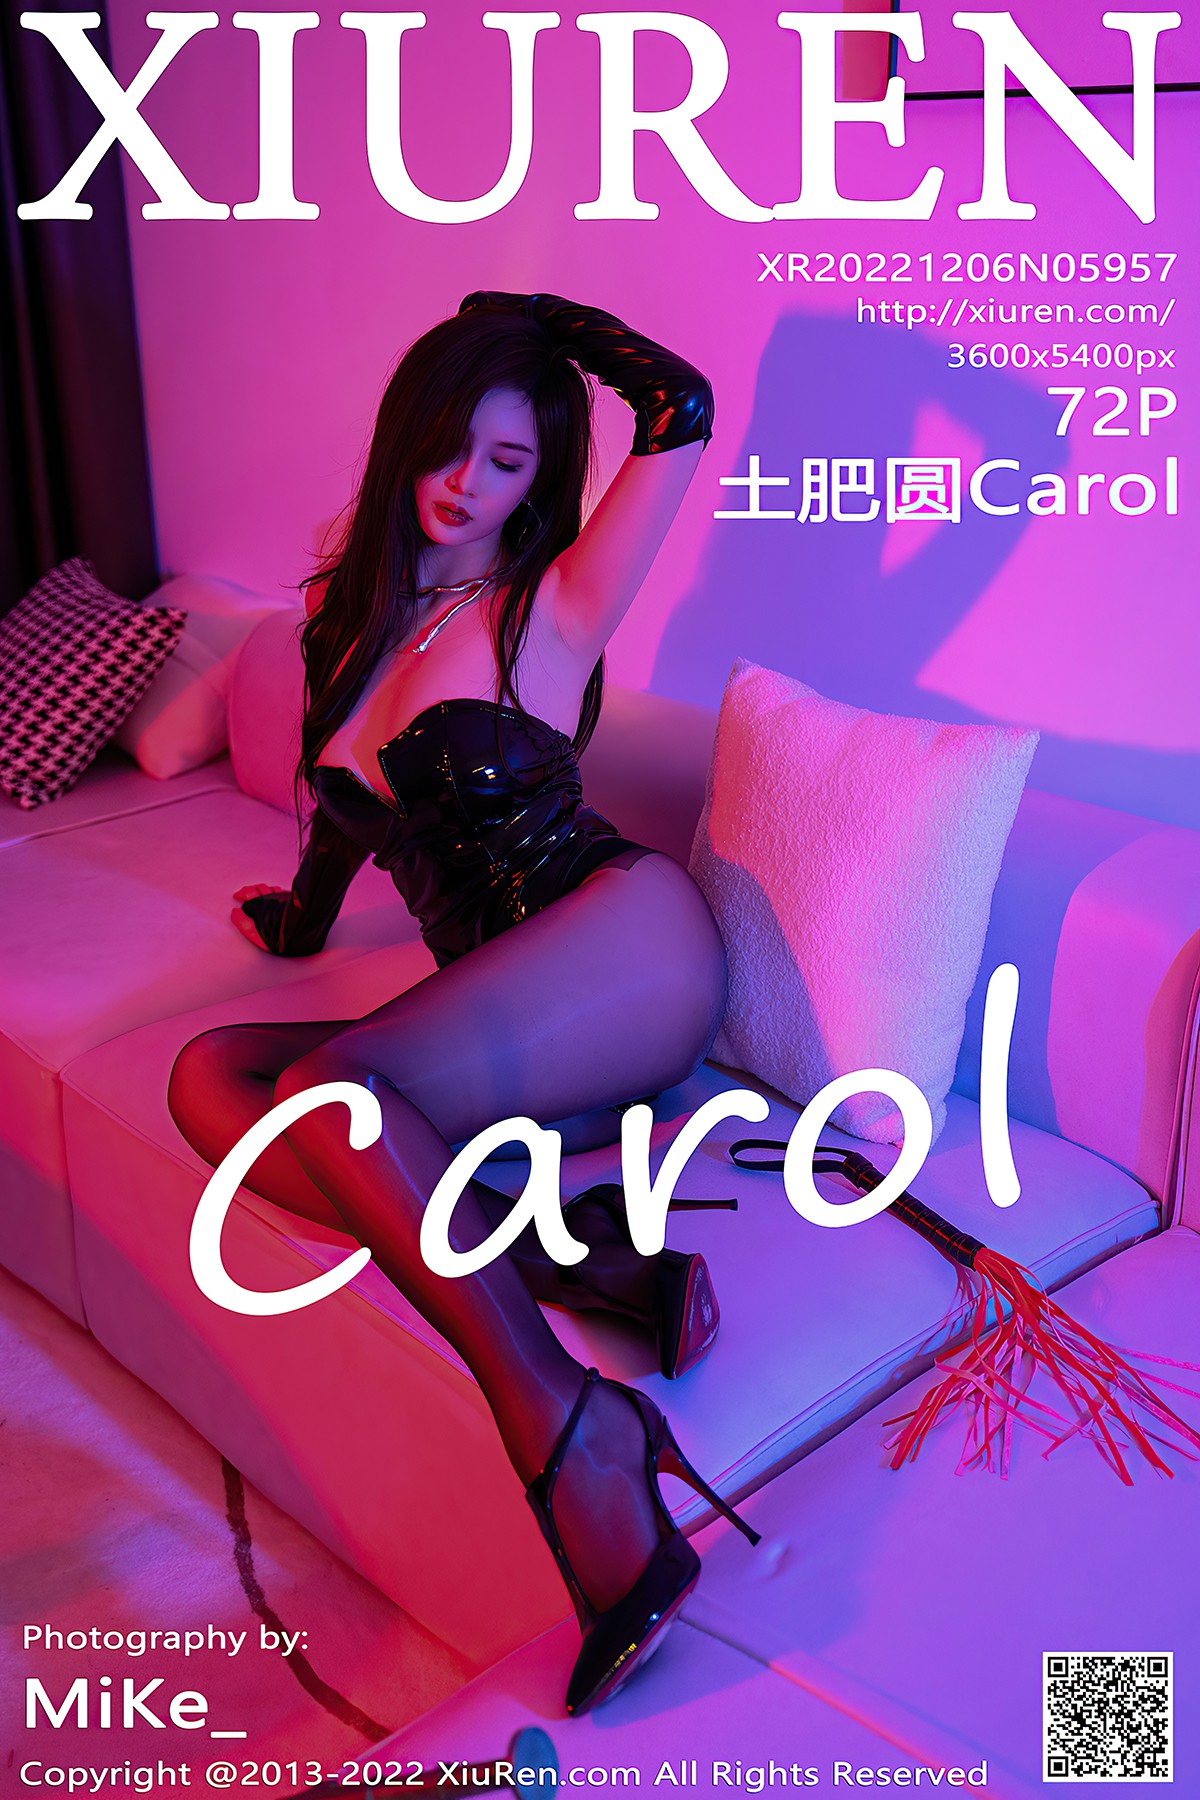 [XIUREN] No.5957 Tu Fei Yuan Carol 土肥圆Carol Cover Photo